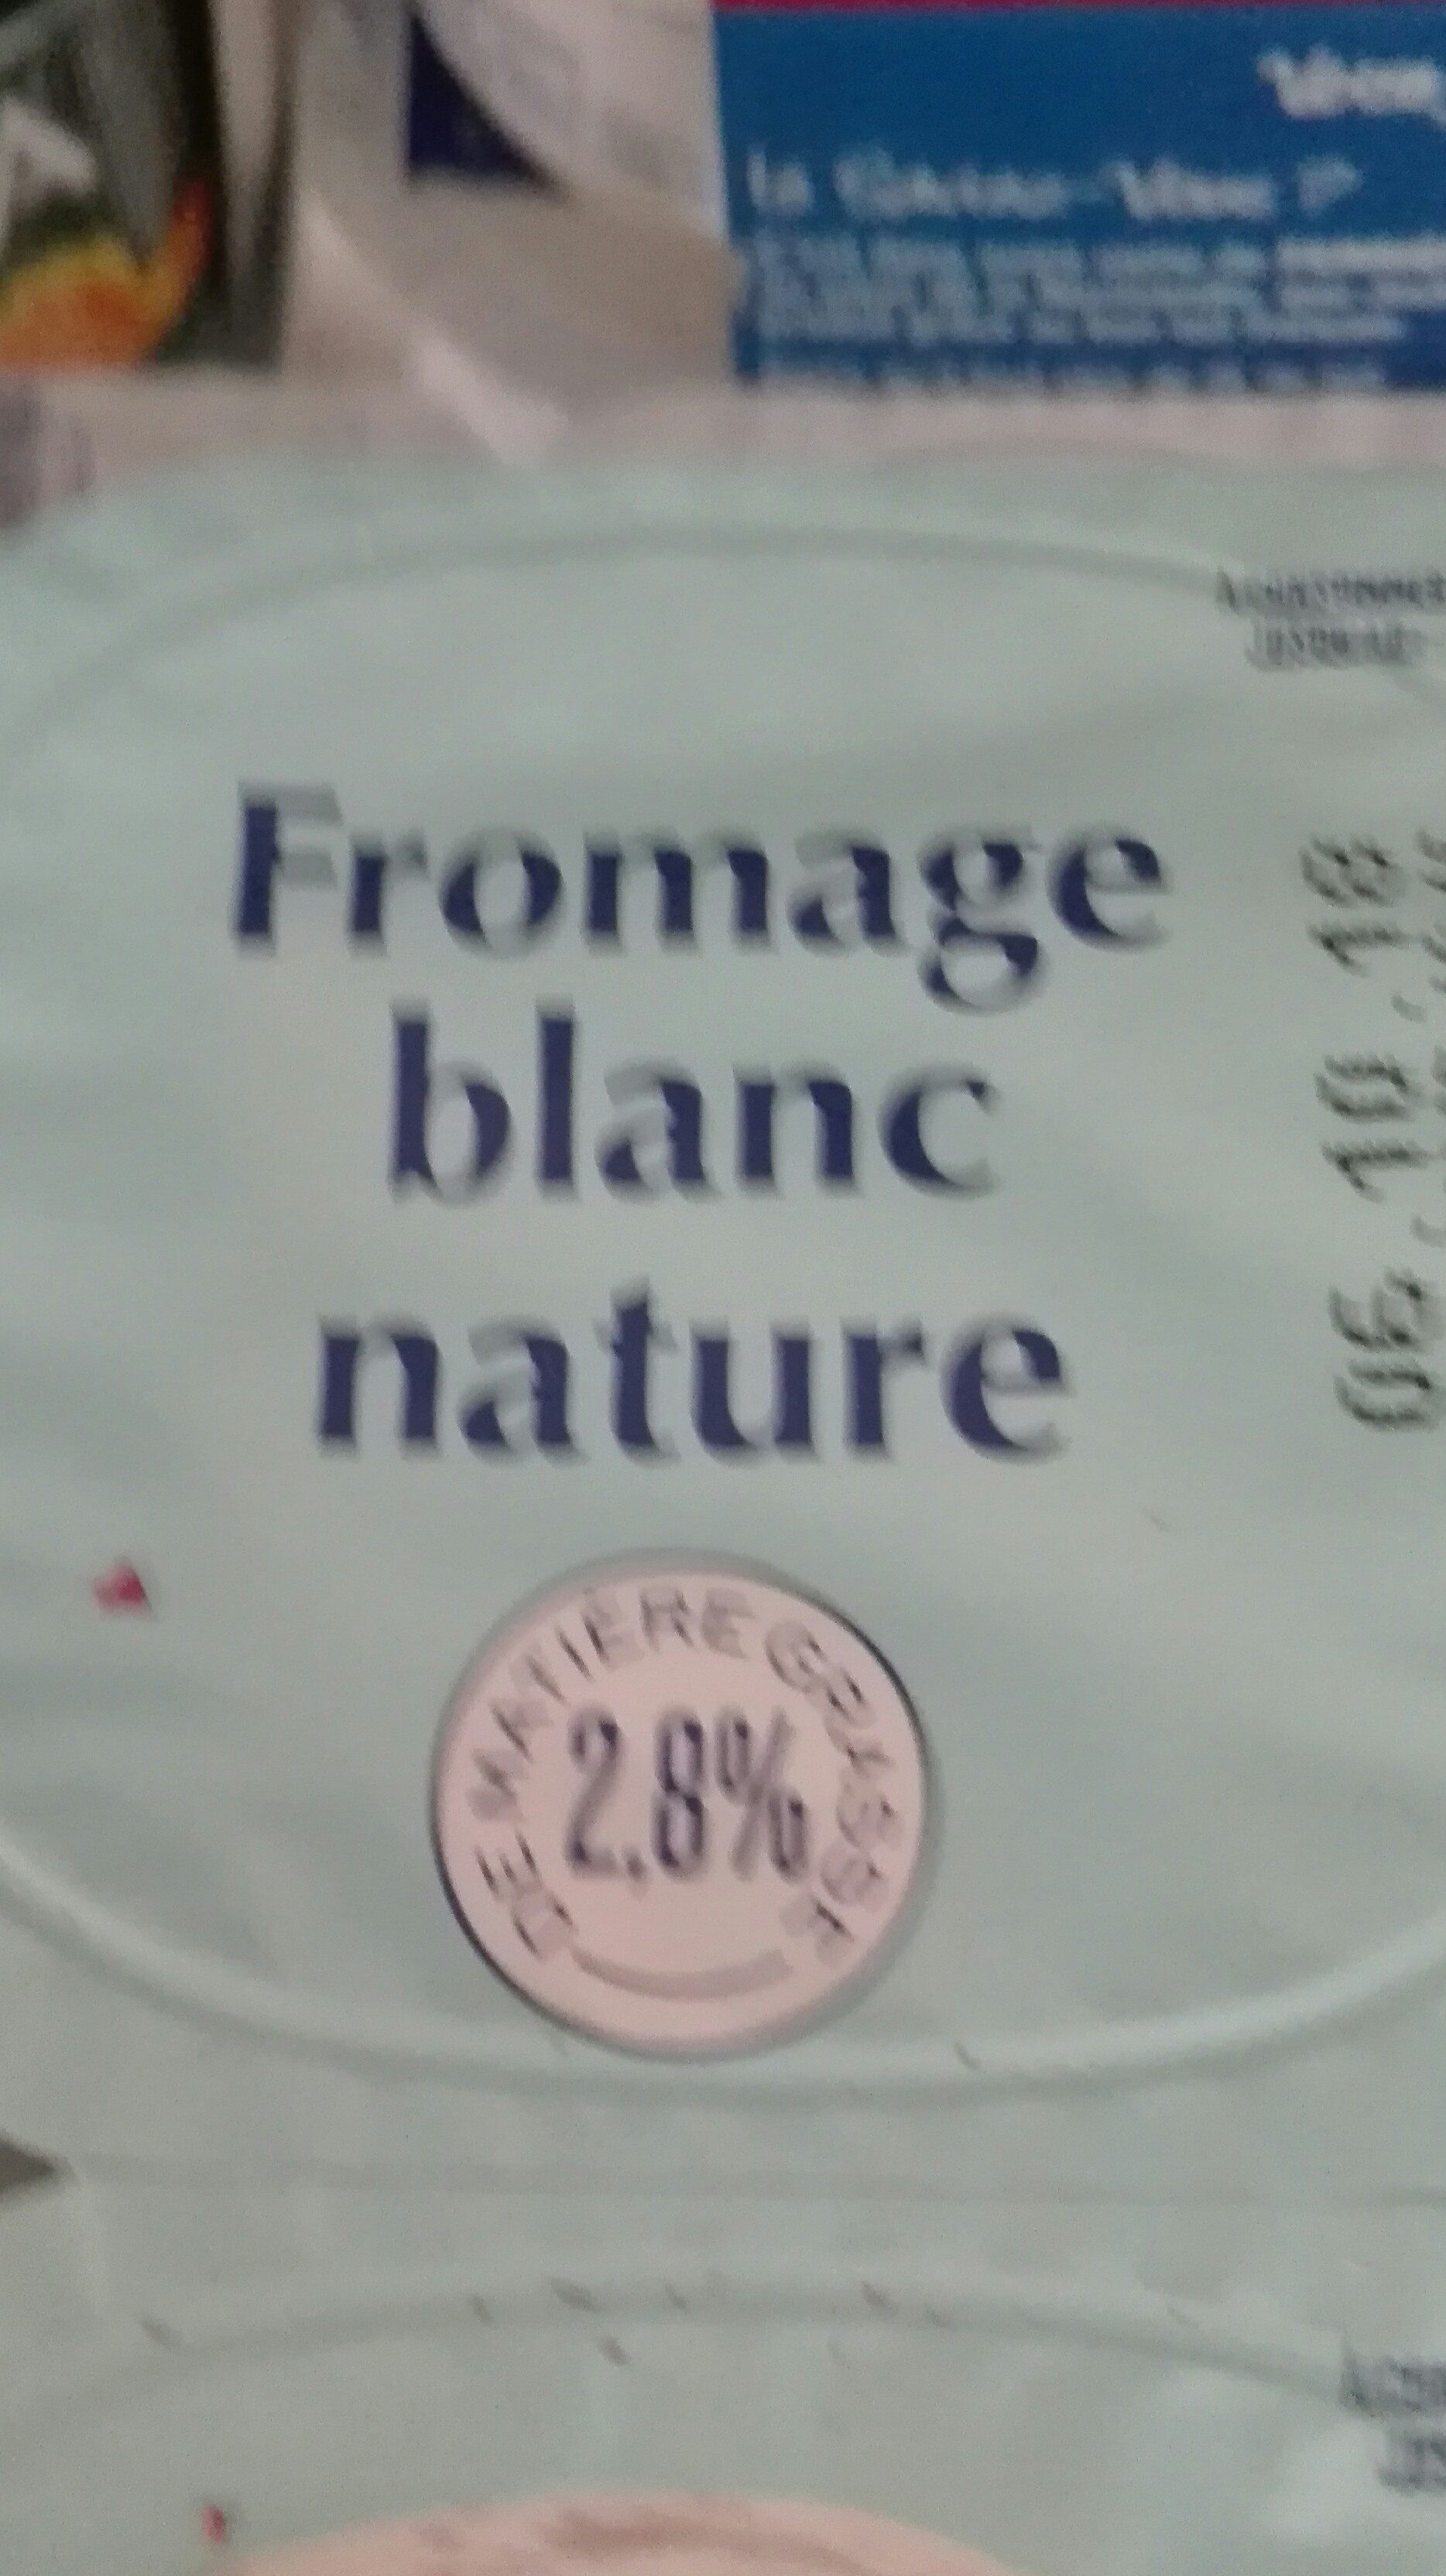 Fromage bmanc nature - Produit - fr